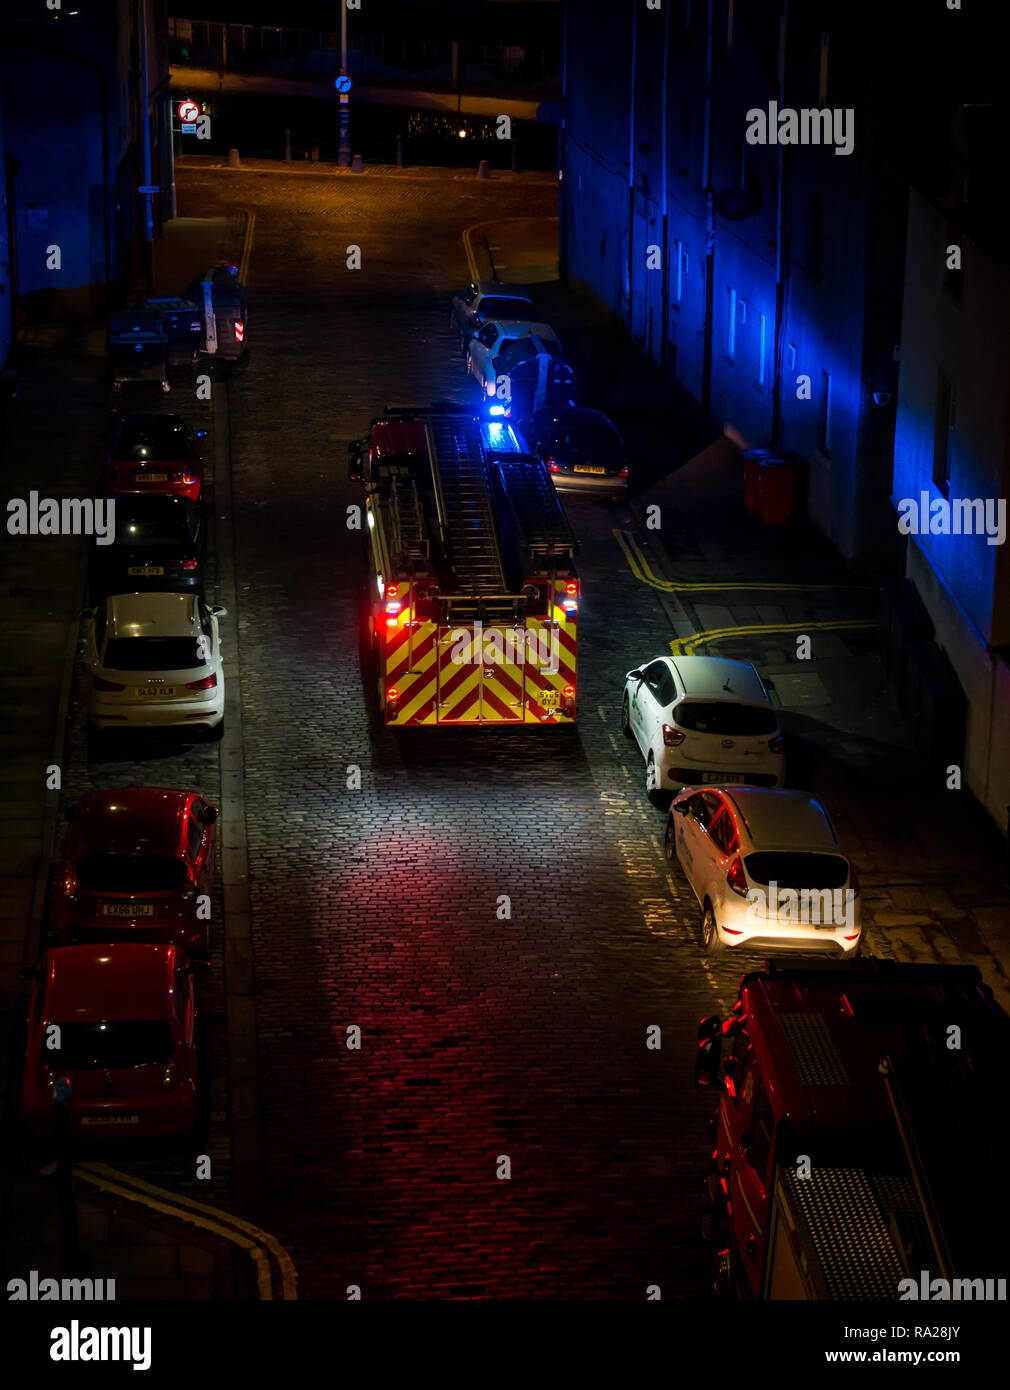 Löschfahrzeuge mit Blau blinkende Lichter in der Nacht die Teilnahme an Feueralarm, Leith, Edinburgh, Schottland, Großbritannien Stockfoto